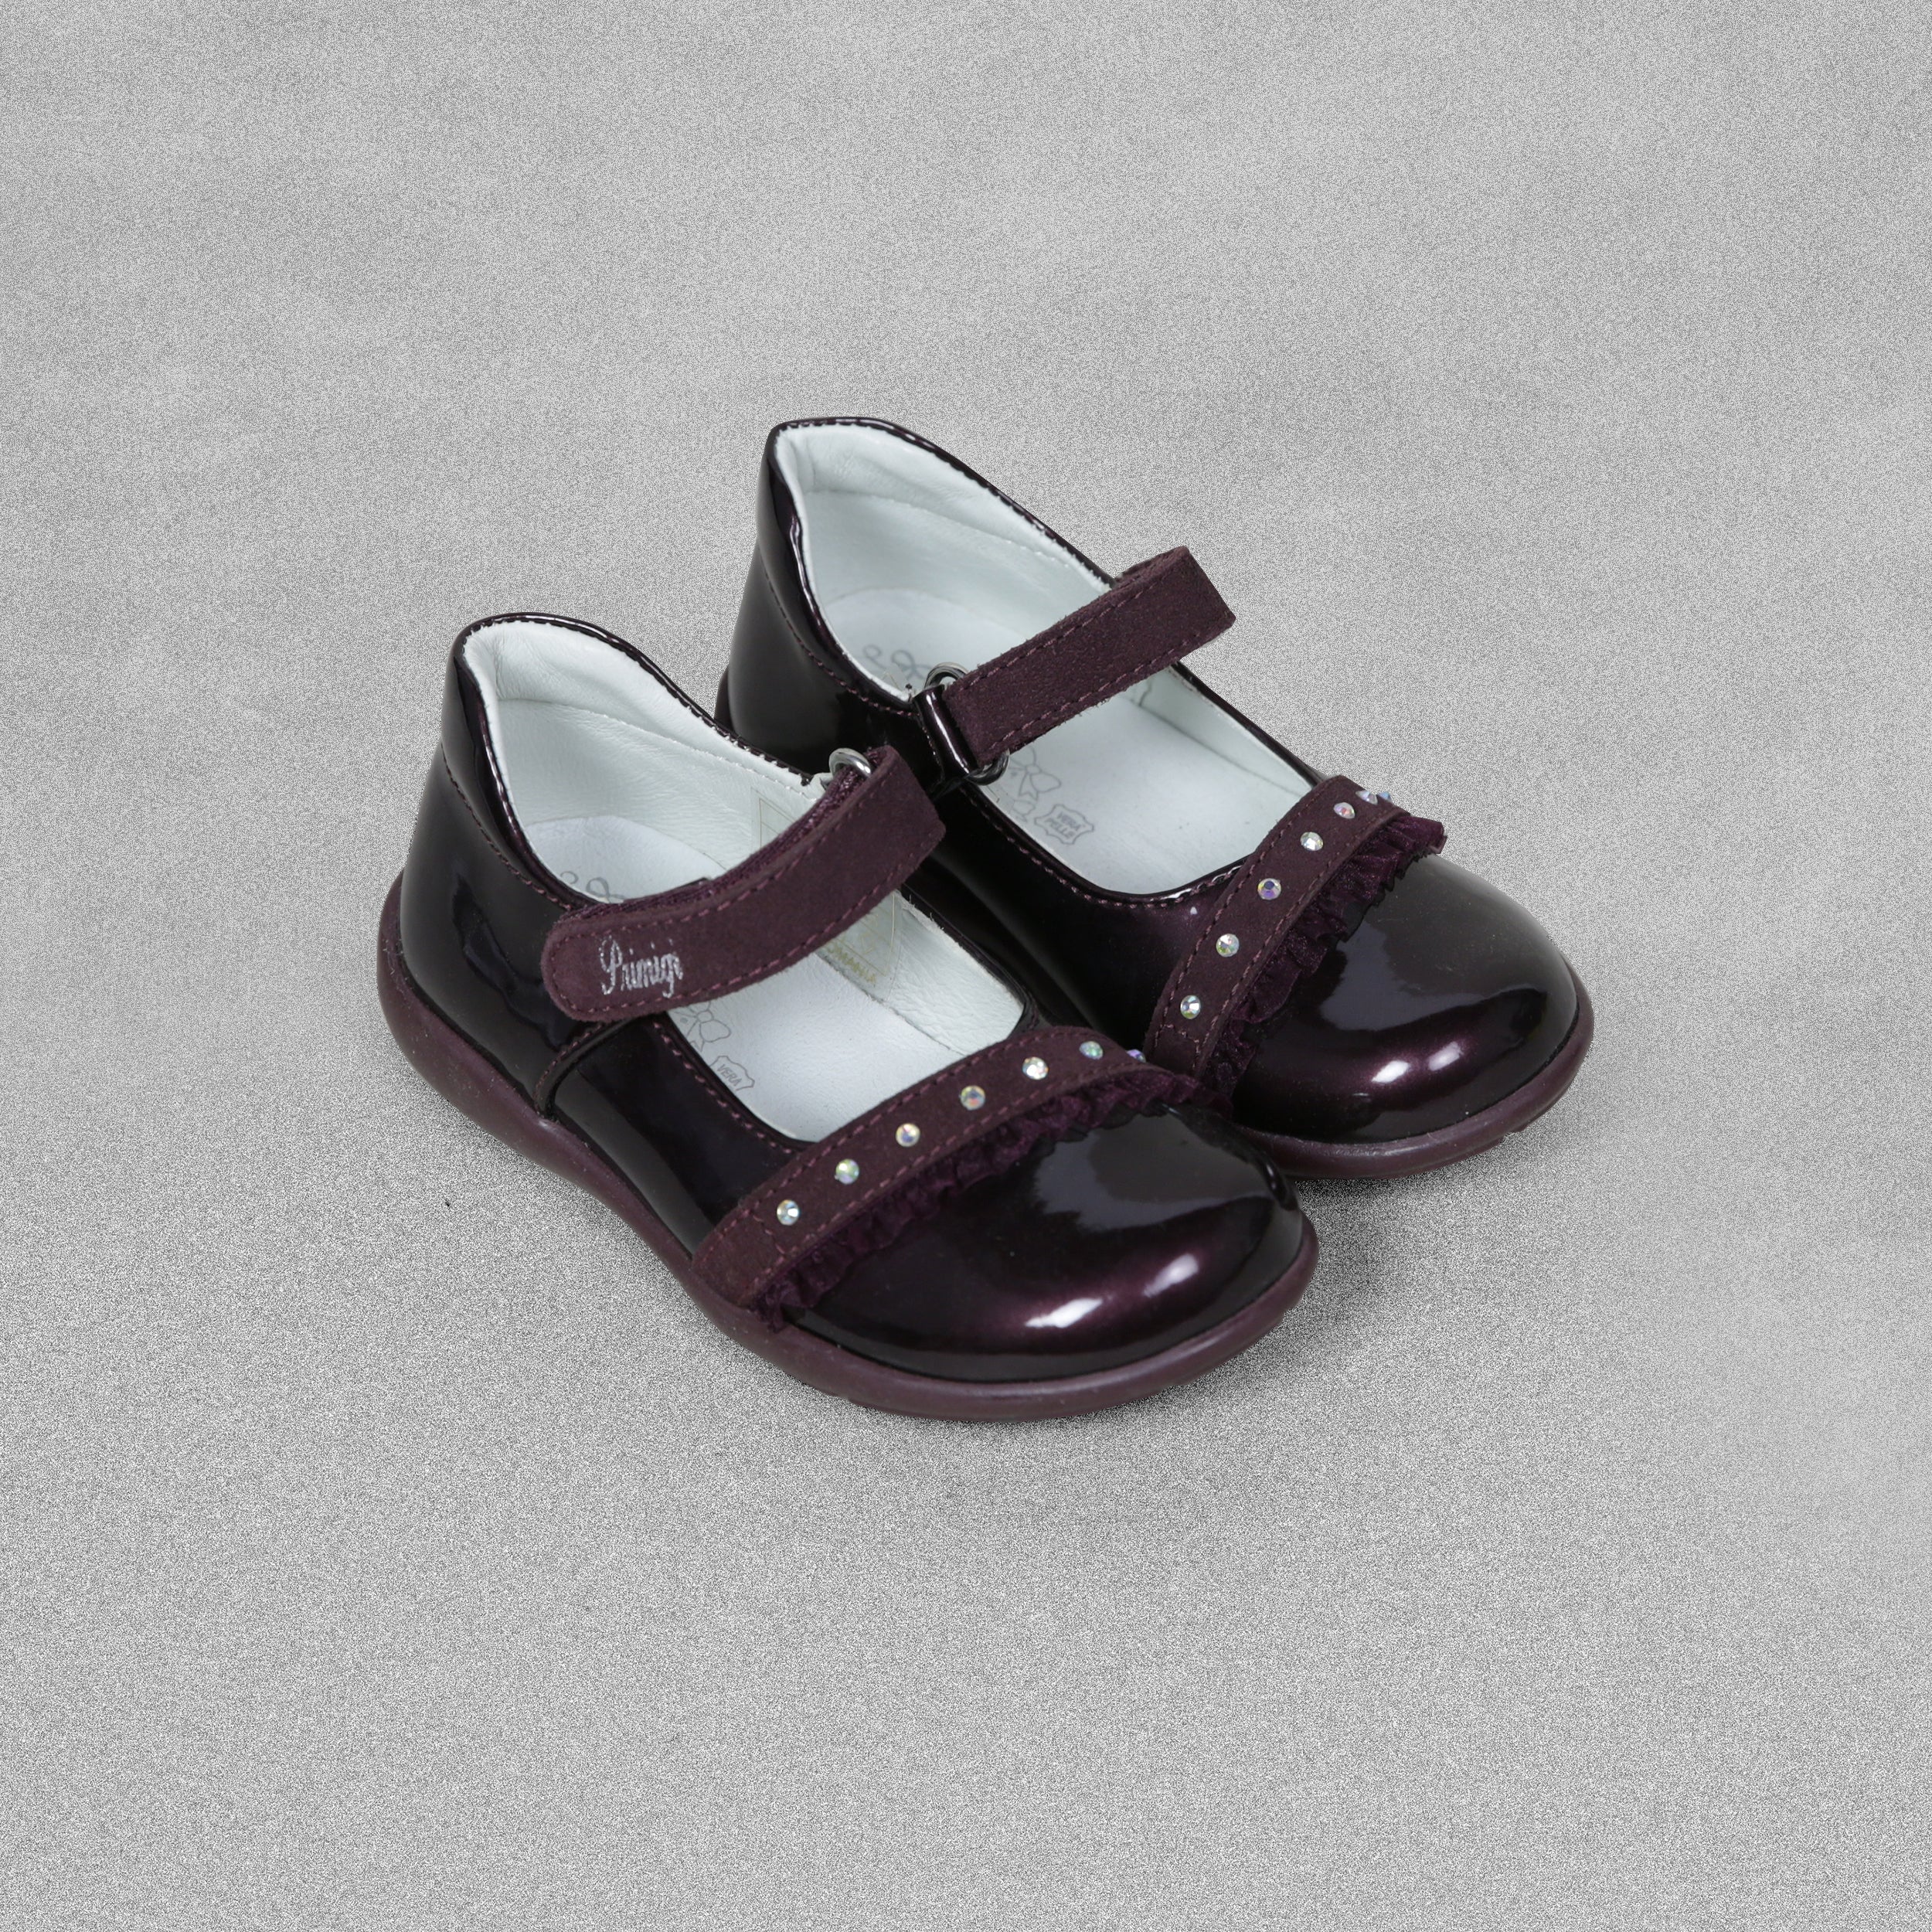 'Primigi'  Girls Burgundy Patent Leather Shoes - UK Child Size 8 / EU 25